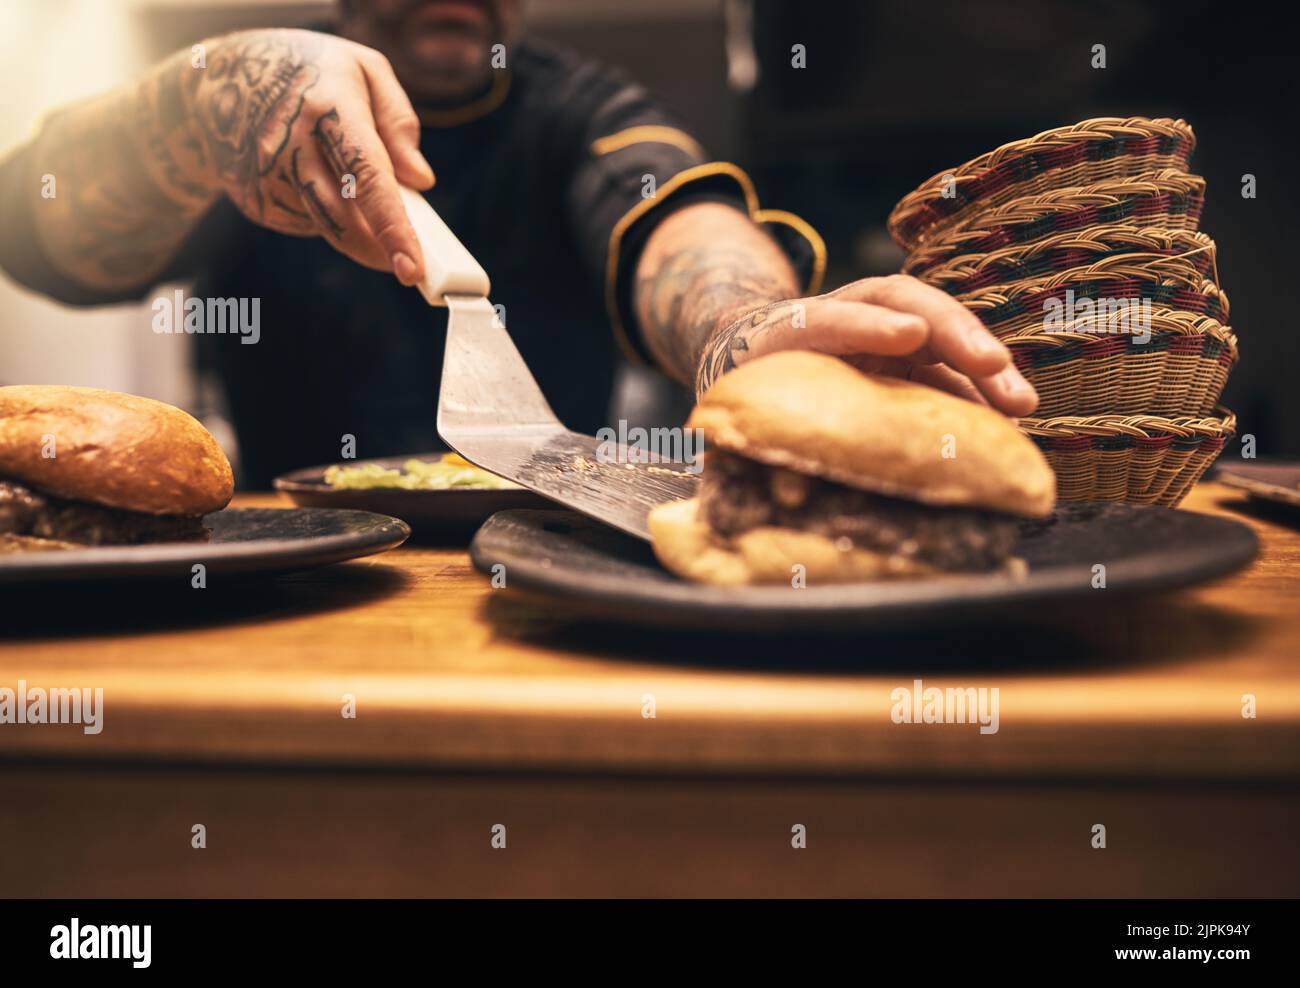 Commandez. Gros plan d'un chef méconnu tatoué les mains servant un hamburger dans une assiette à l'intérieur d'une cuisine d'un restaurant. Banque D'Images